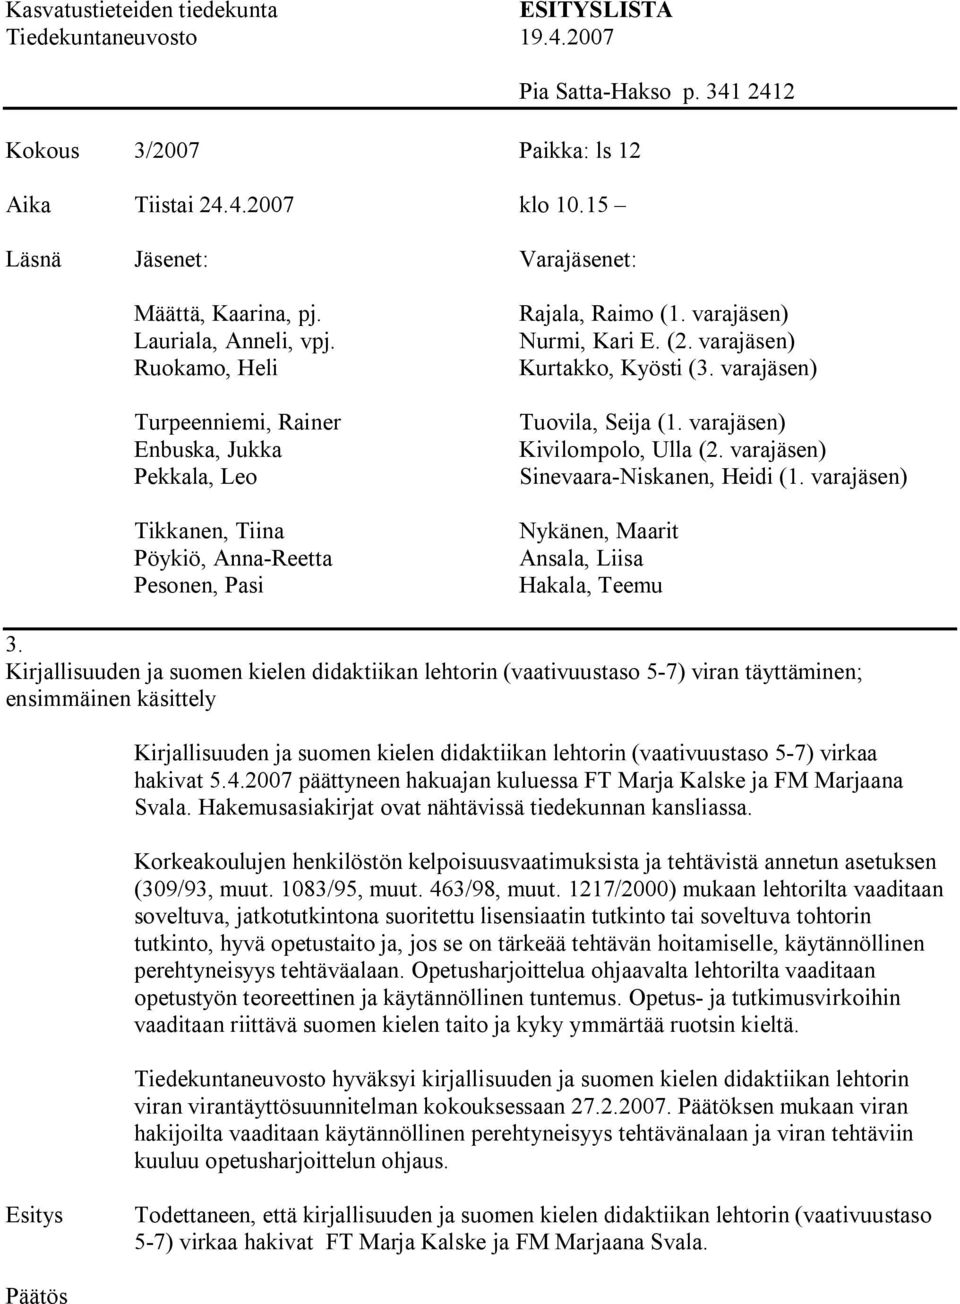 hakivat 5.4.2007 päättyneen hakuajan kuluessa FT Marja Kalske ja FM Marjaana Svala. Hakemusasiakirjat ovat nähtävissä tiedekunnan kansliassa.